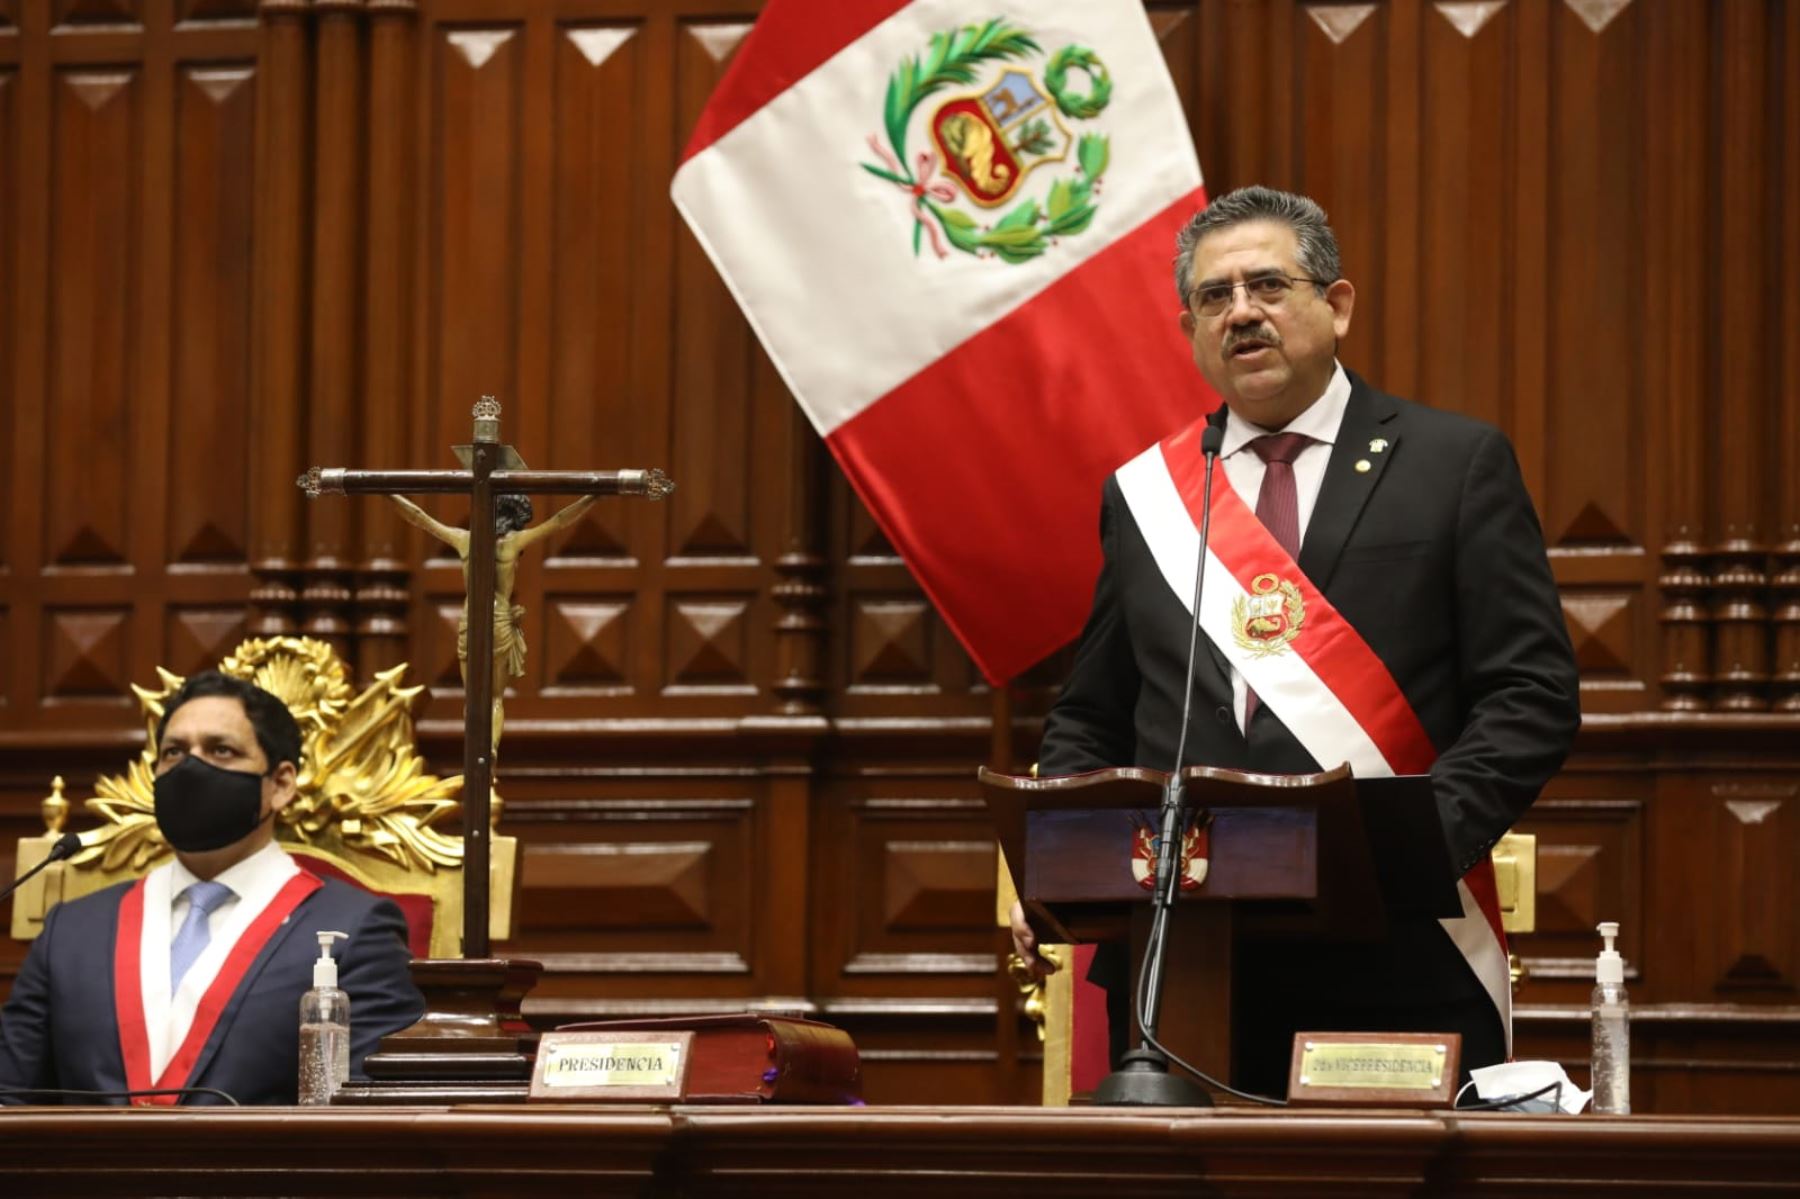 Photo: Congress of the Republic of Peru